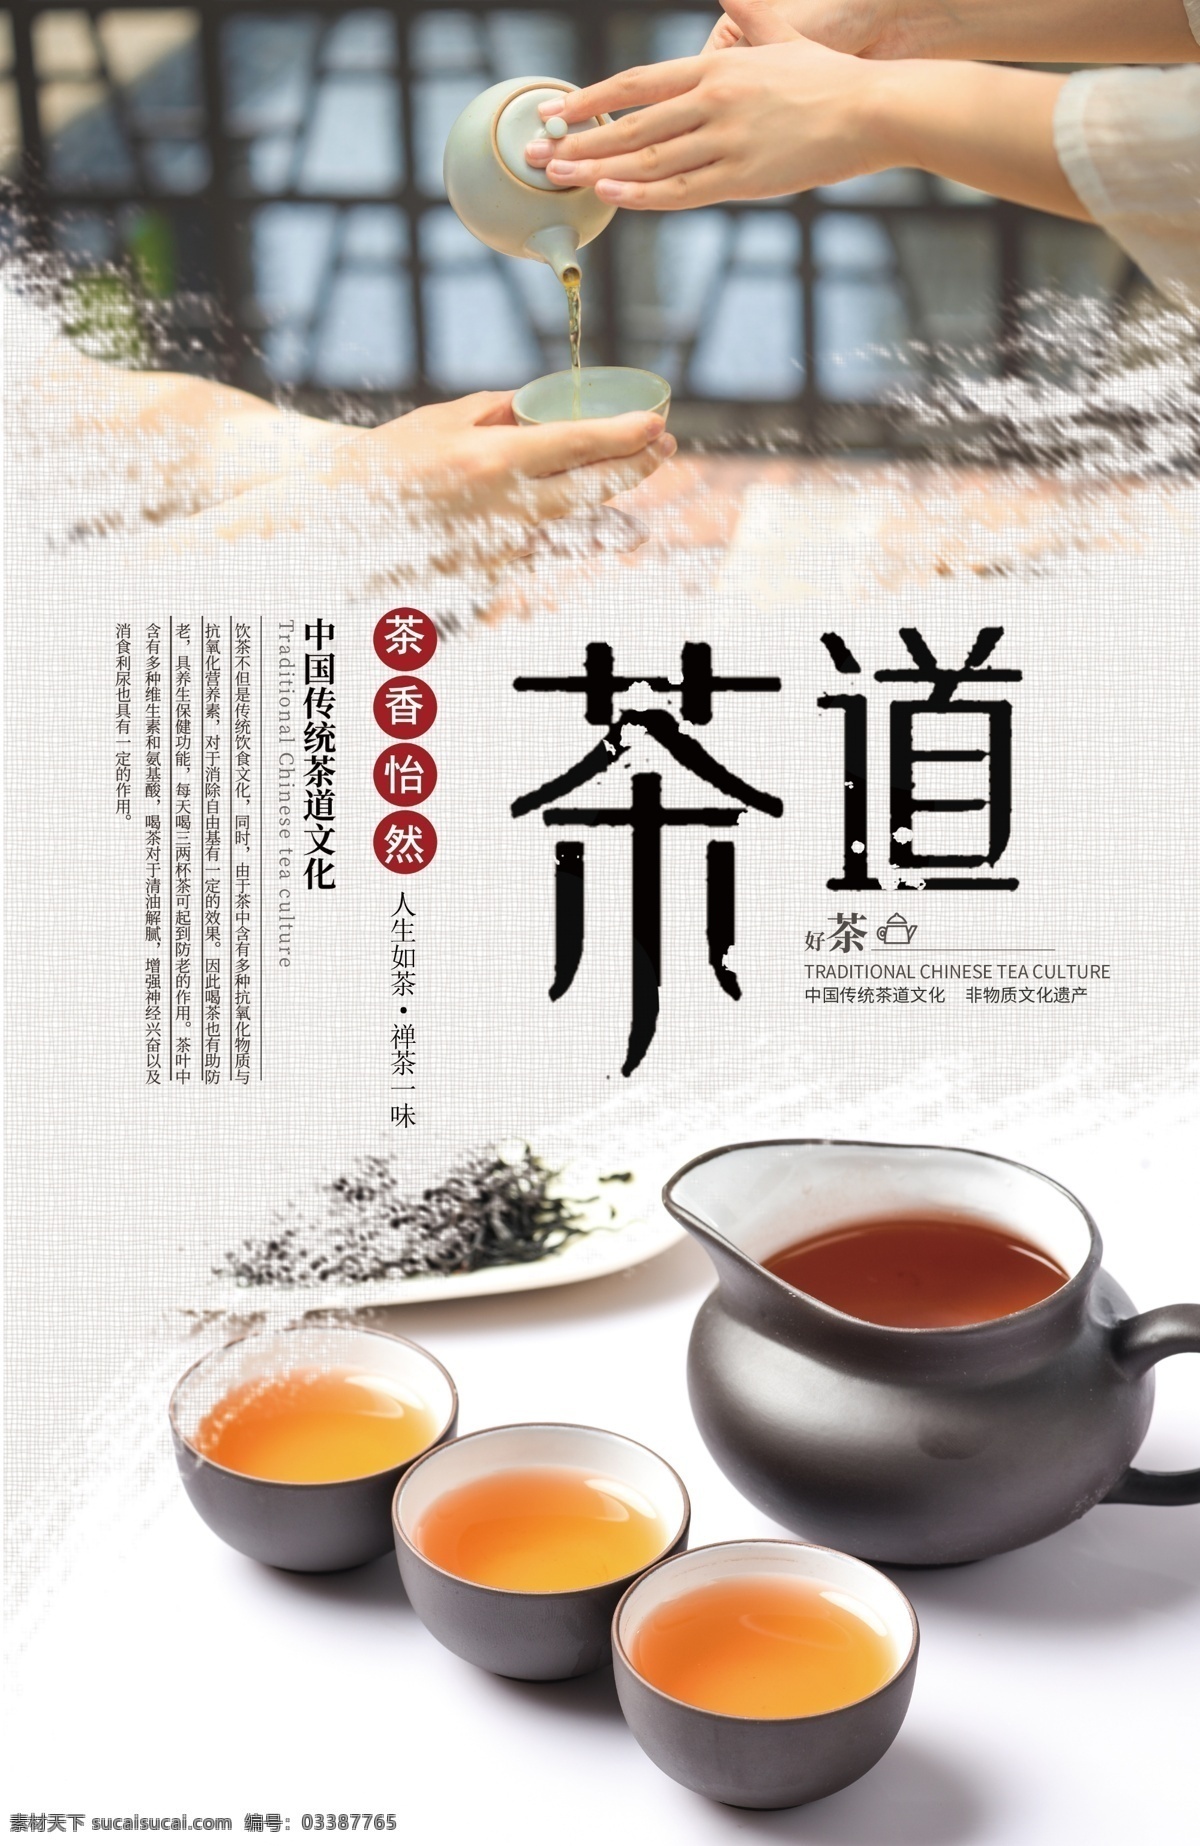 茶道文化展板 茶艺 茶文化 传统文化 品茶 沏茶 泡茶 红茶 绿茶 白茶 茶具 茶艺展板 人生如茶 禅茶一味